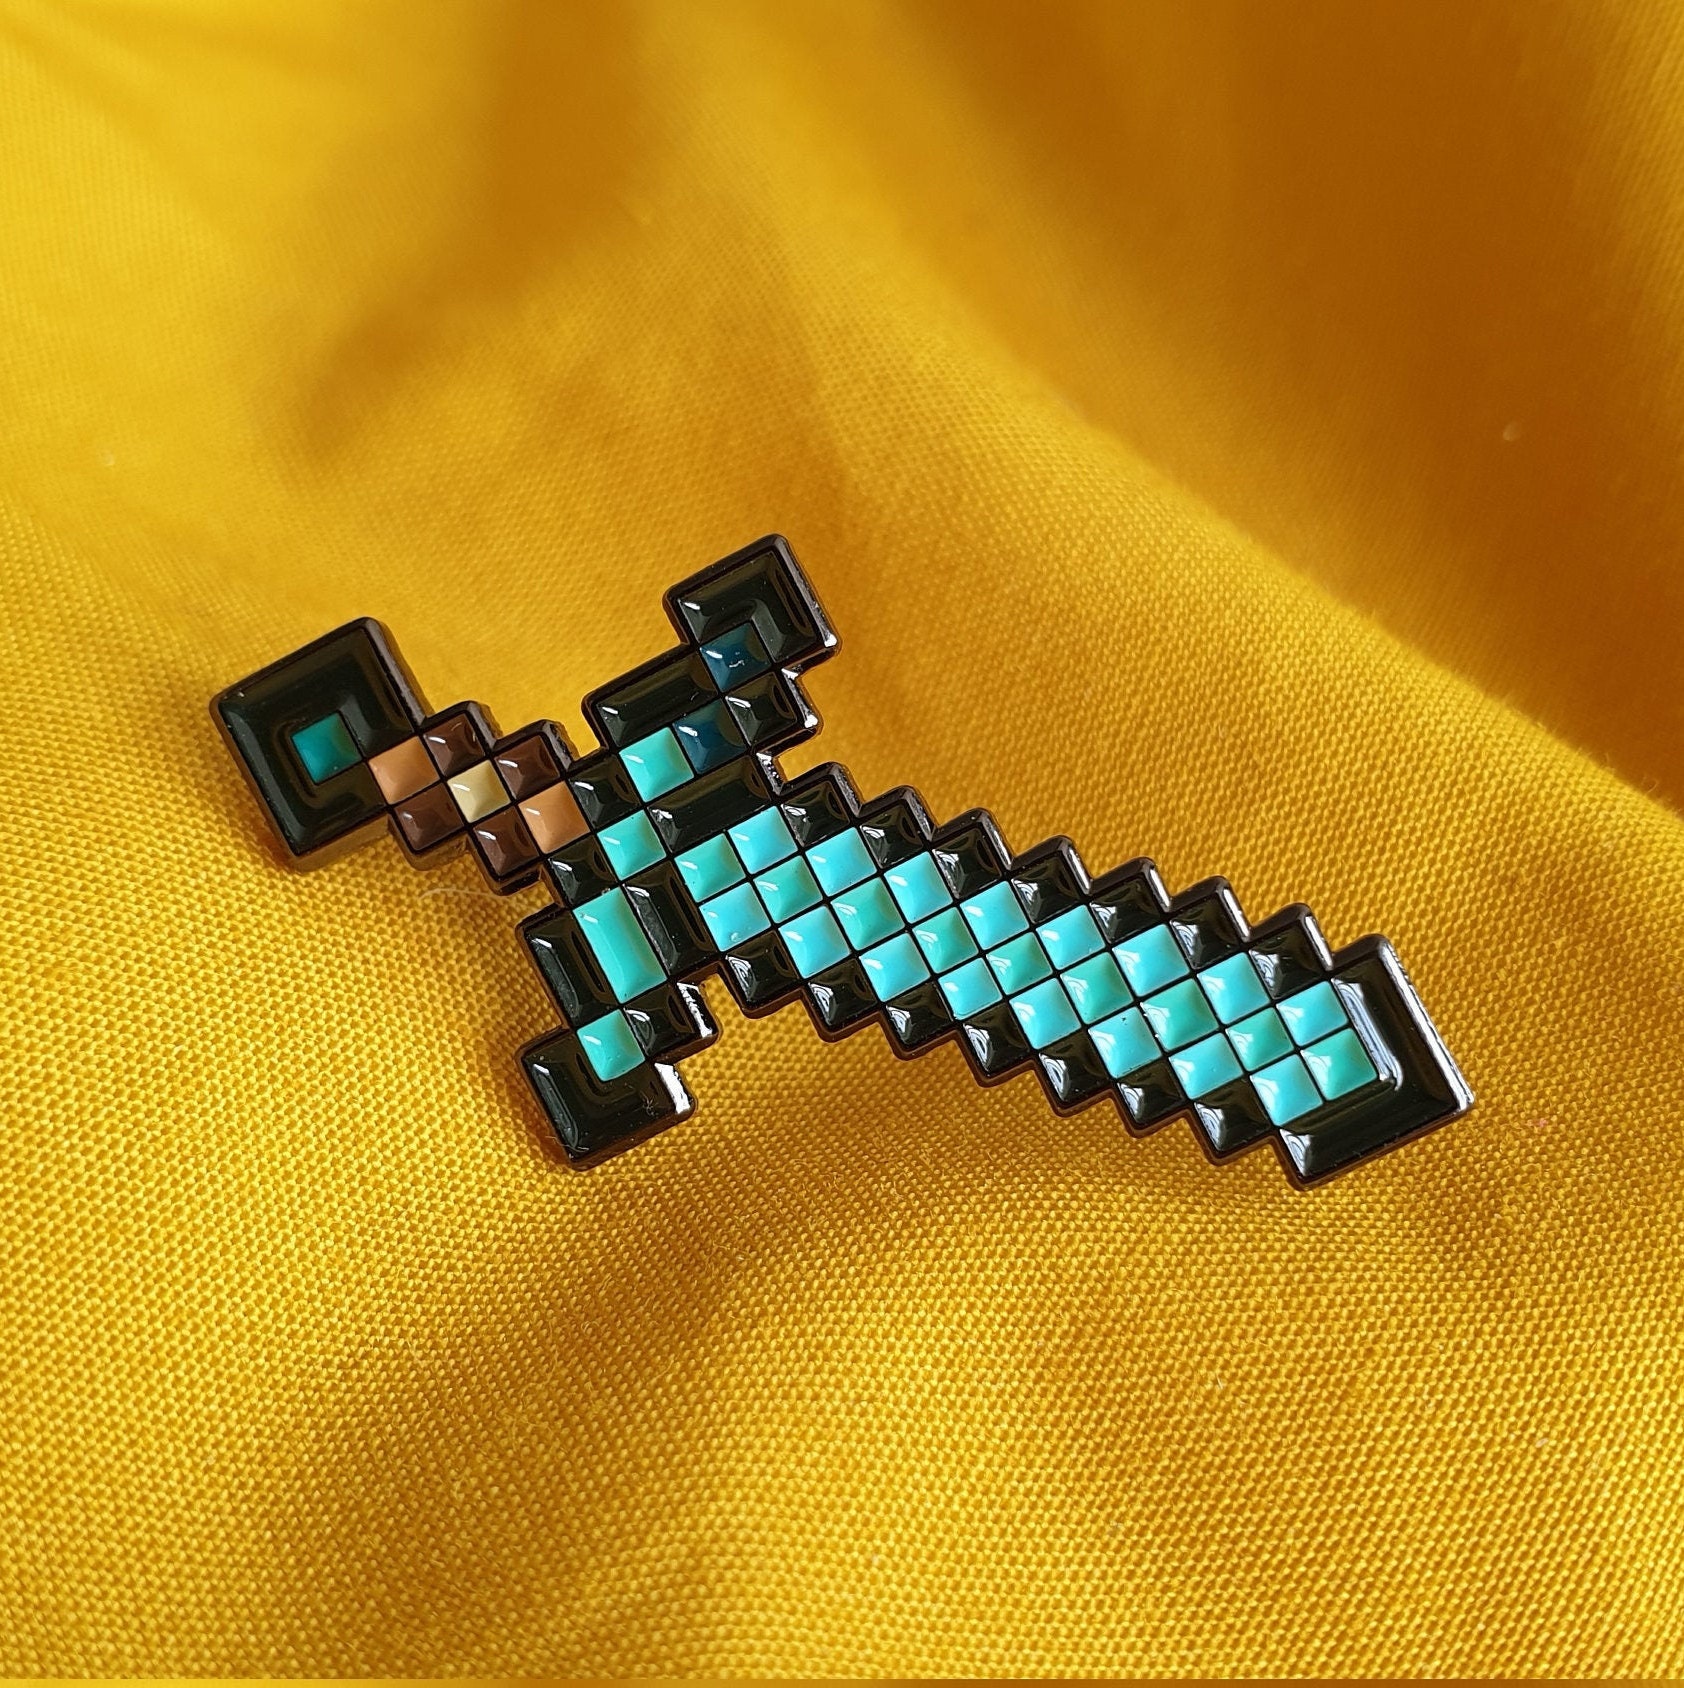 Espada do Minecraft - DiY Geek 